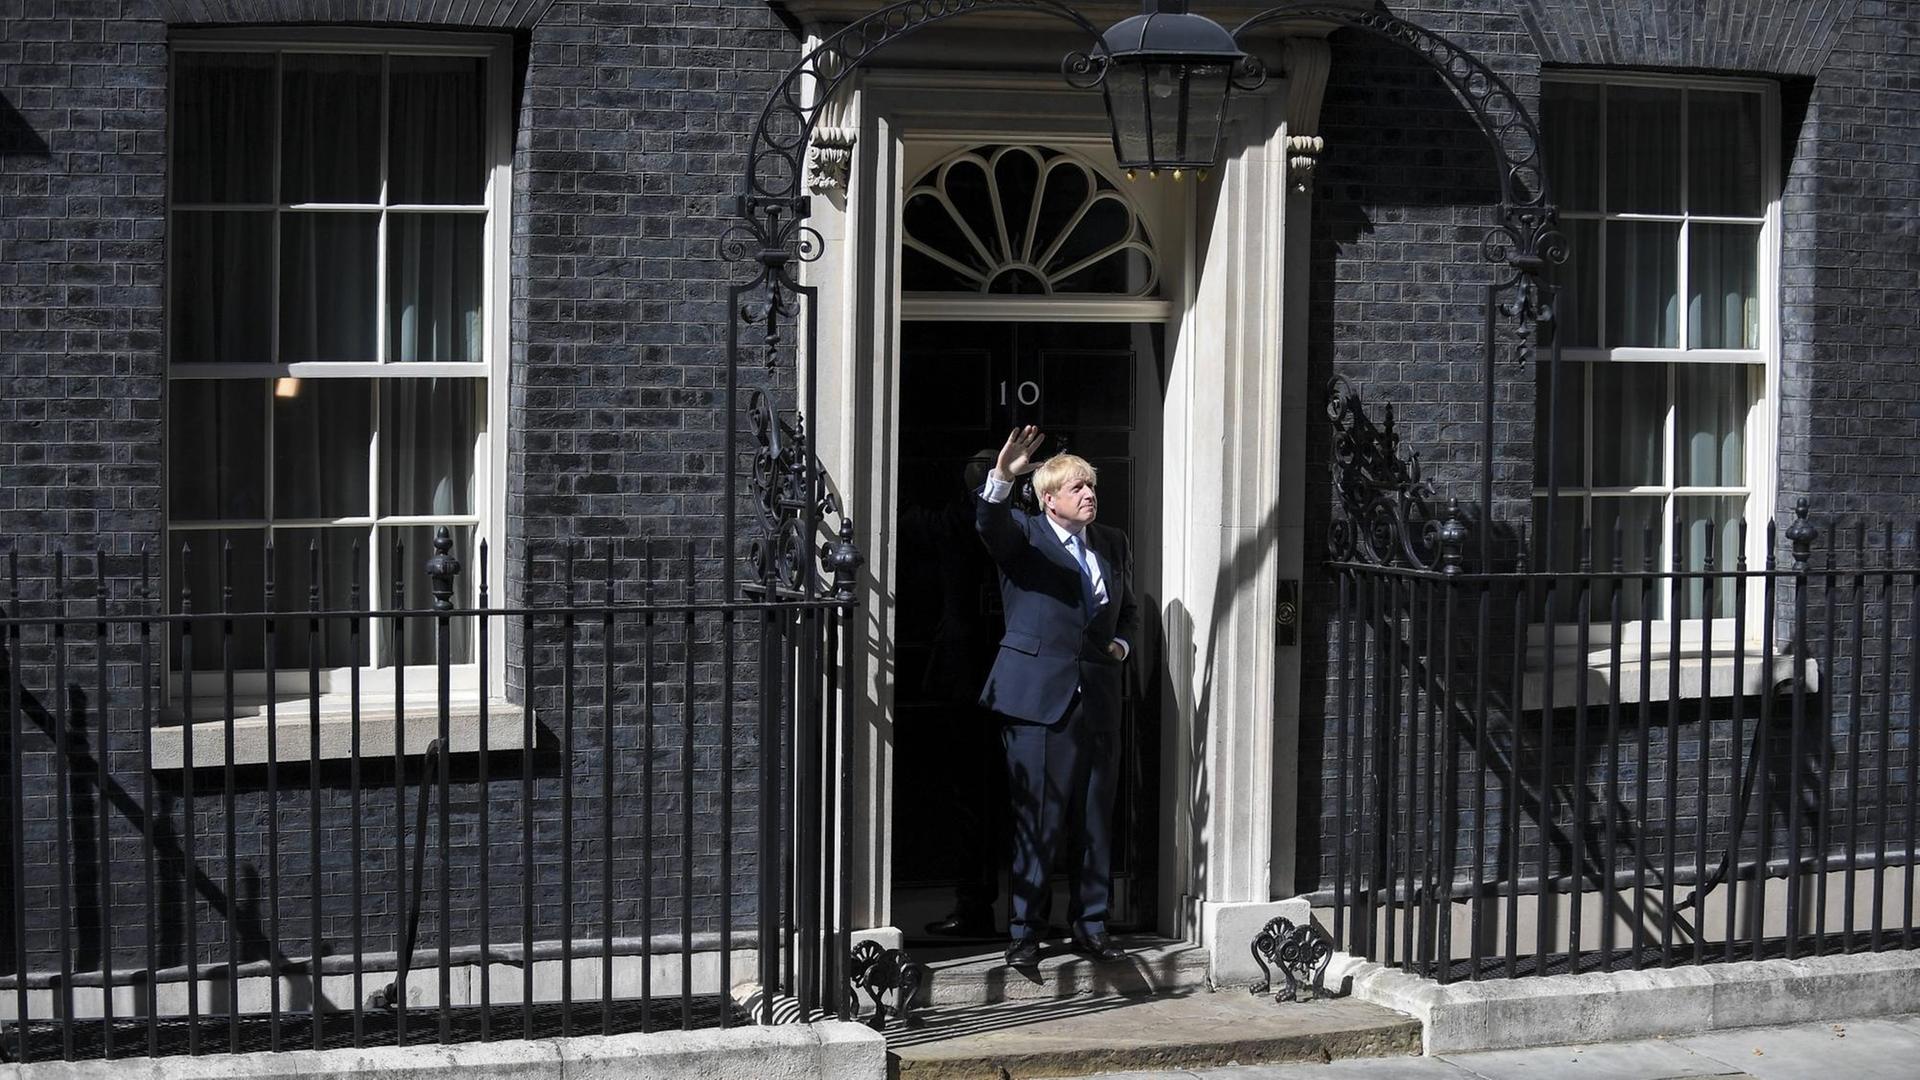 Der neue Premierminister Boris Johnson posiert nach seiner Rede in London, Großbritannien, am 24. Juli 2019 vor der 10 Downing Street.